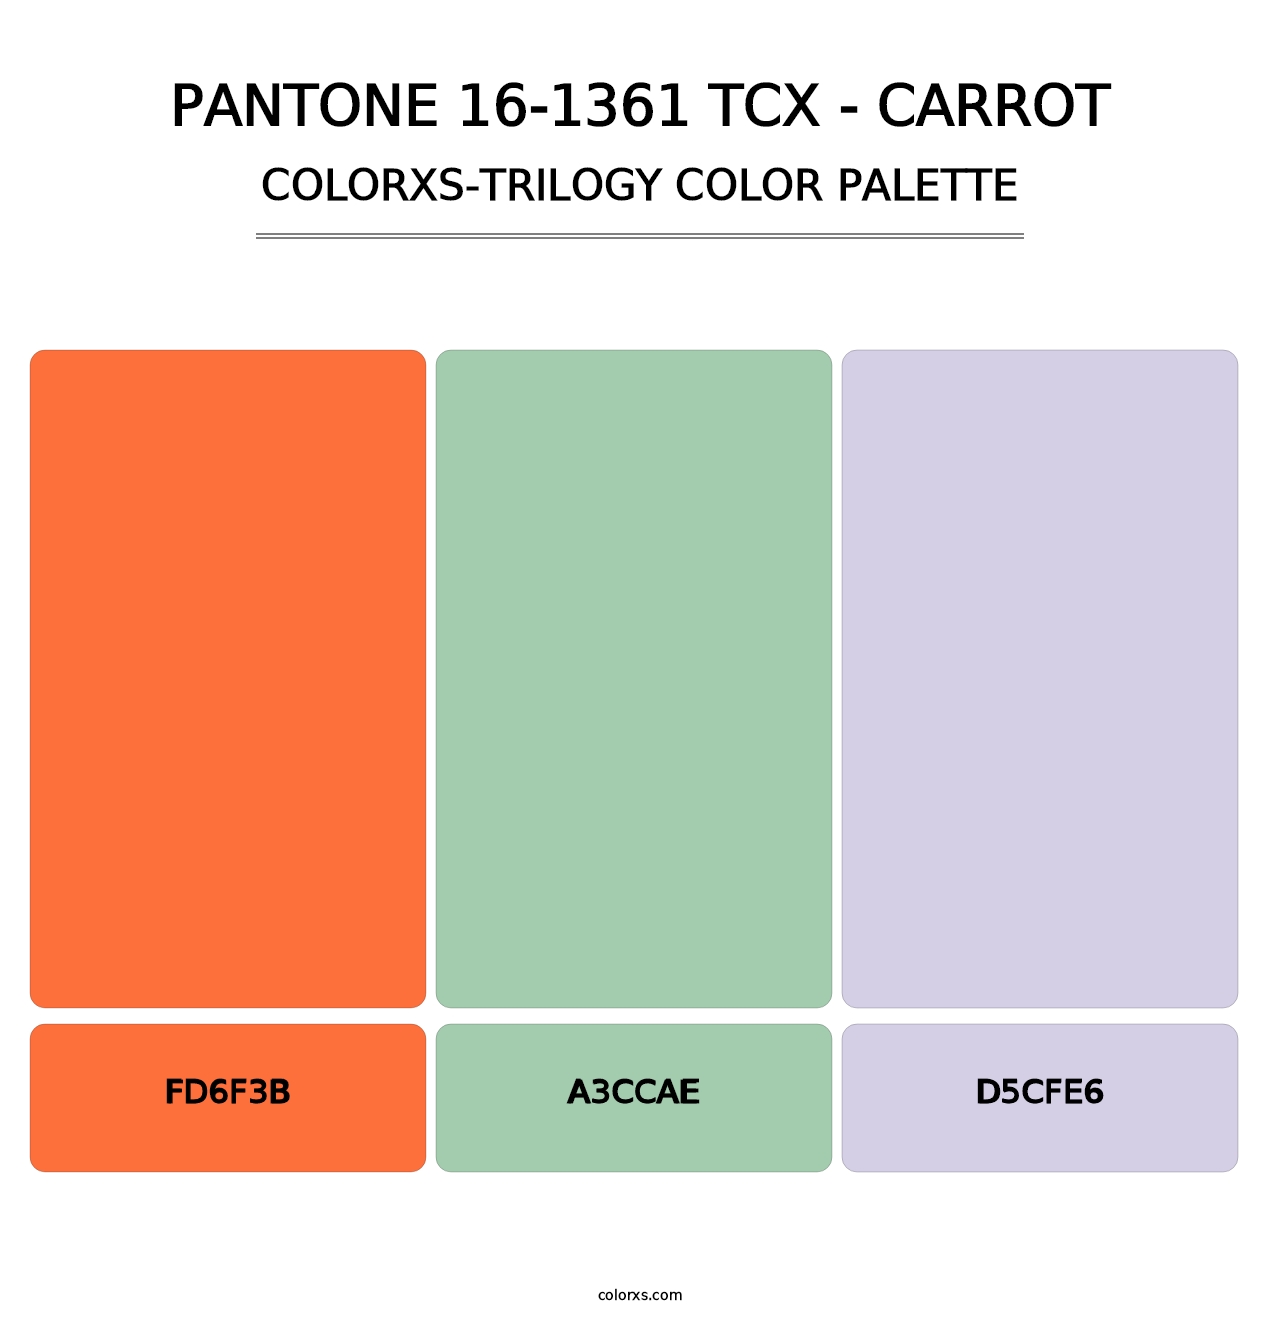 PANTONE 16-1361 TCX - Carrot - Colorxs Trilogy Palette